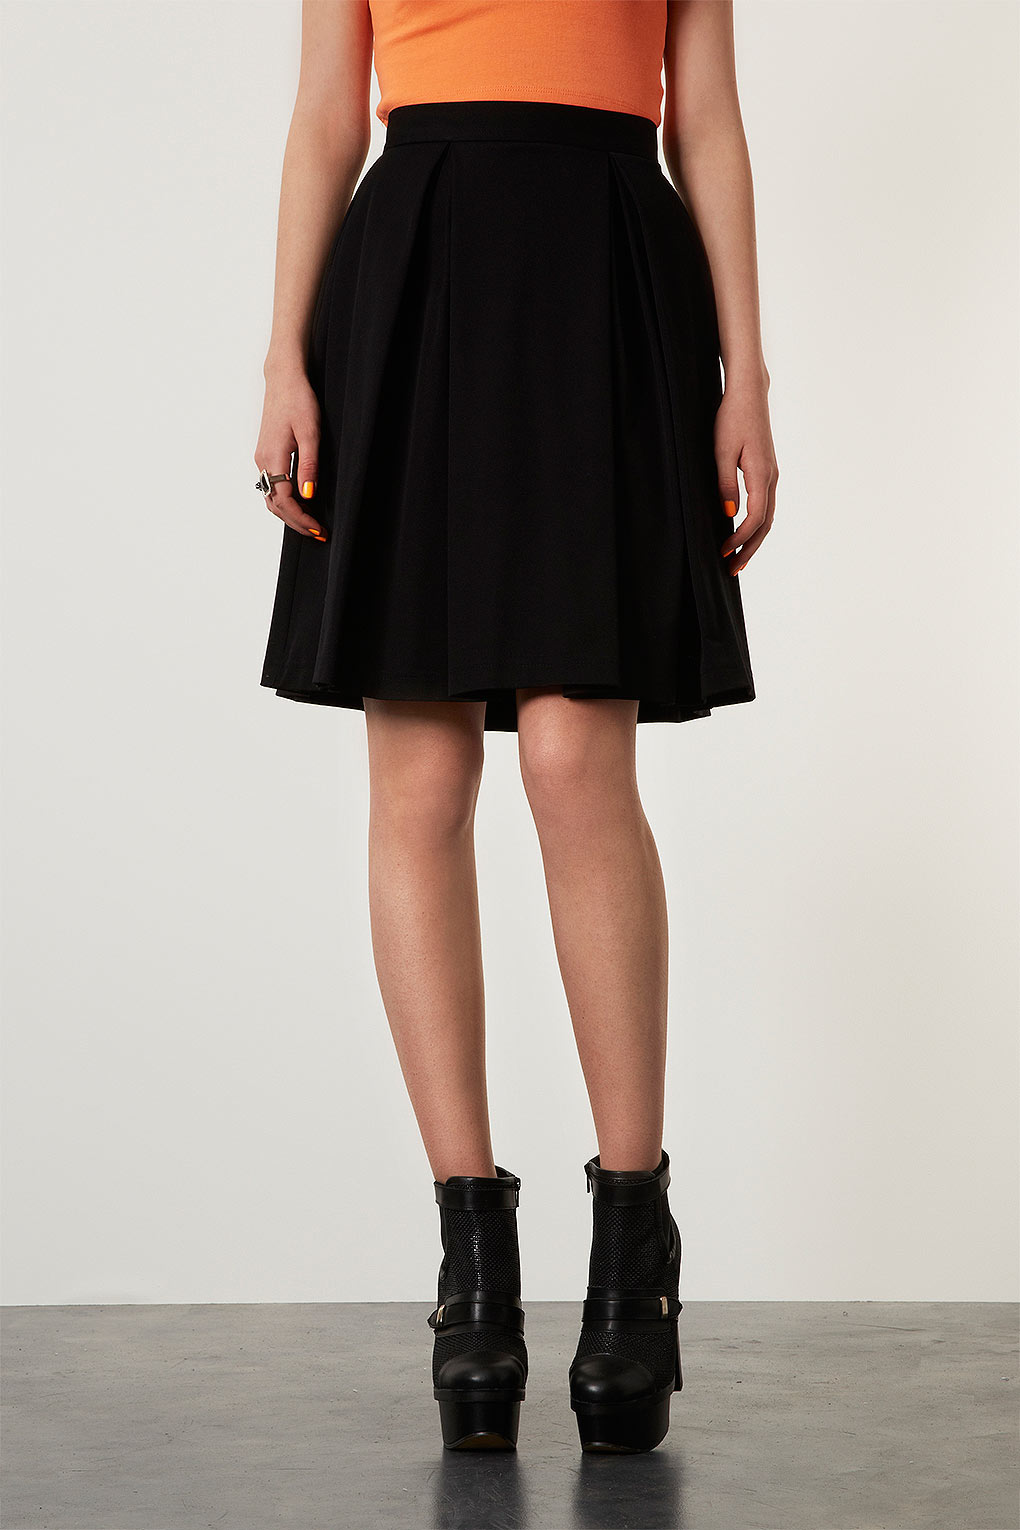 Lyst - Topshop Knee Length Pleat Skirt in Black